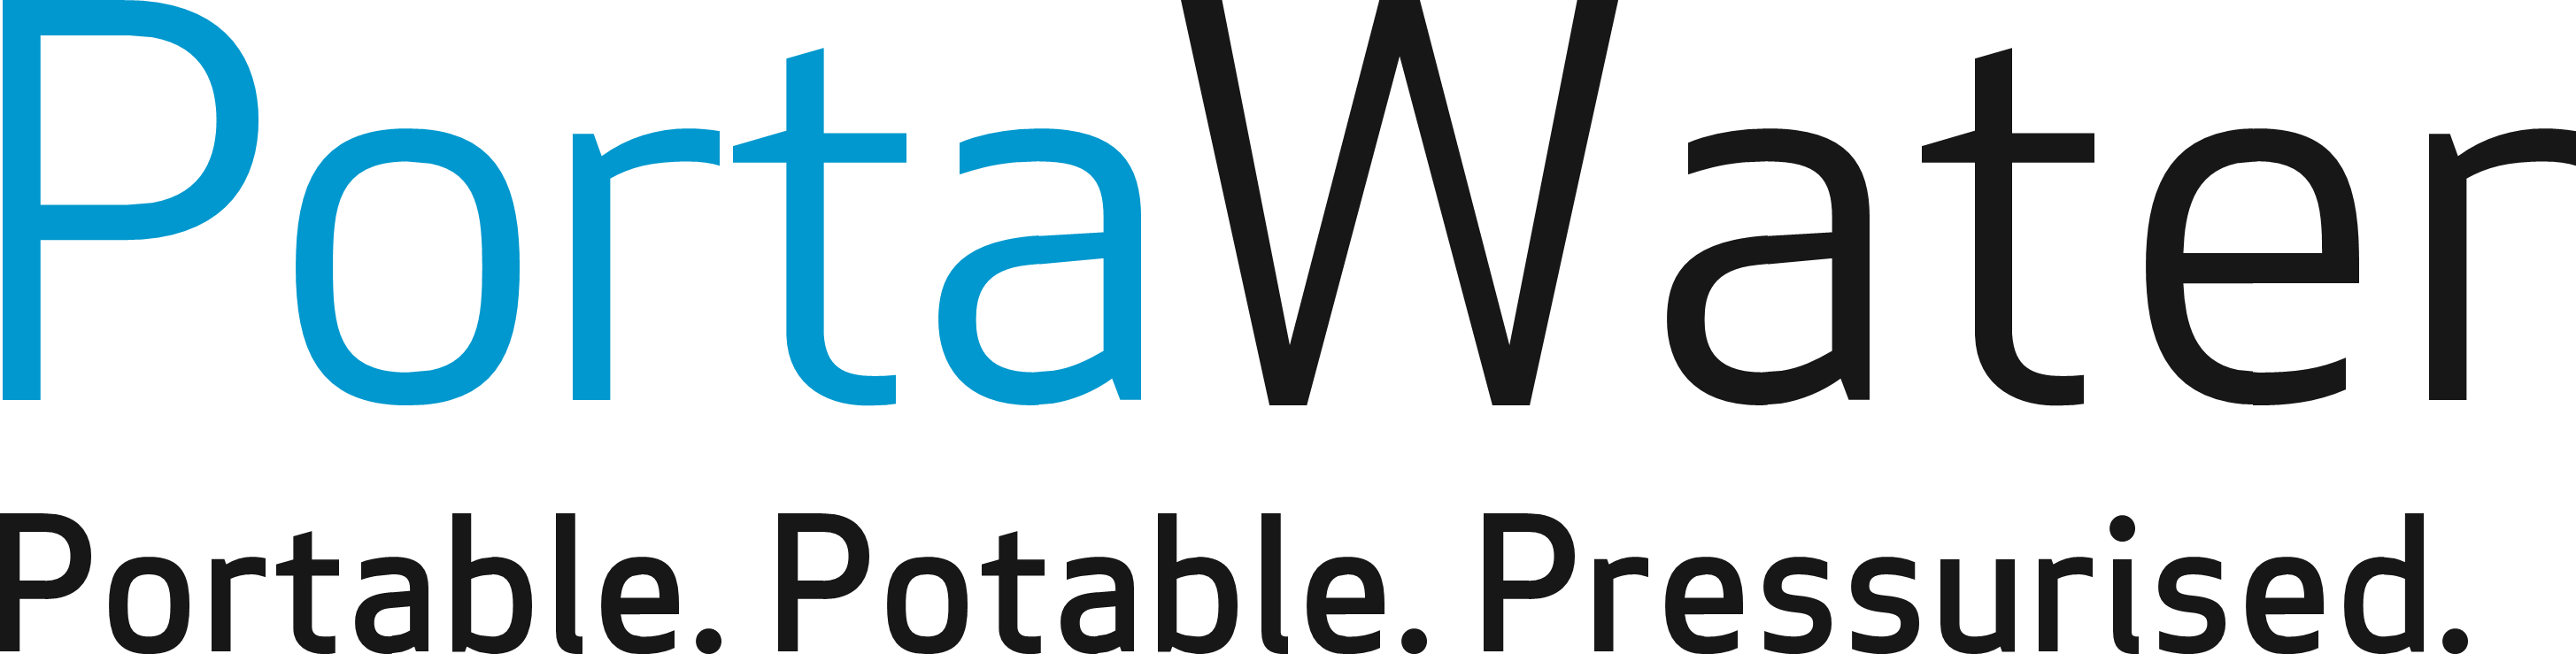 PortaWater logo